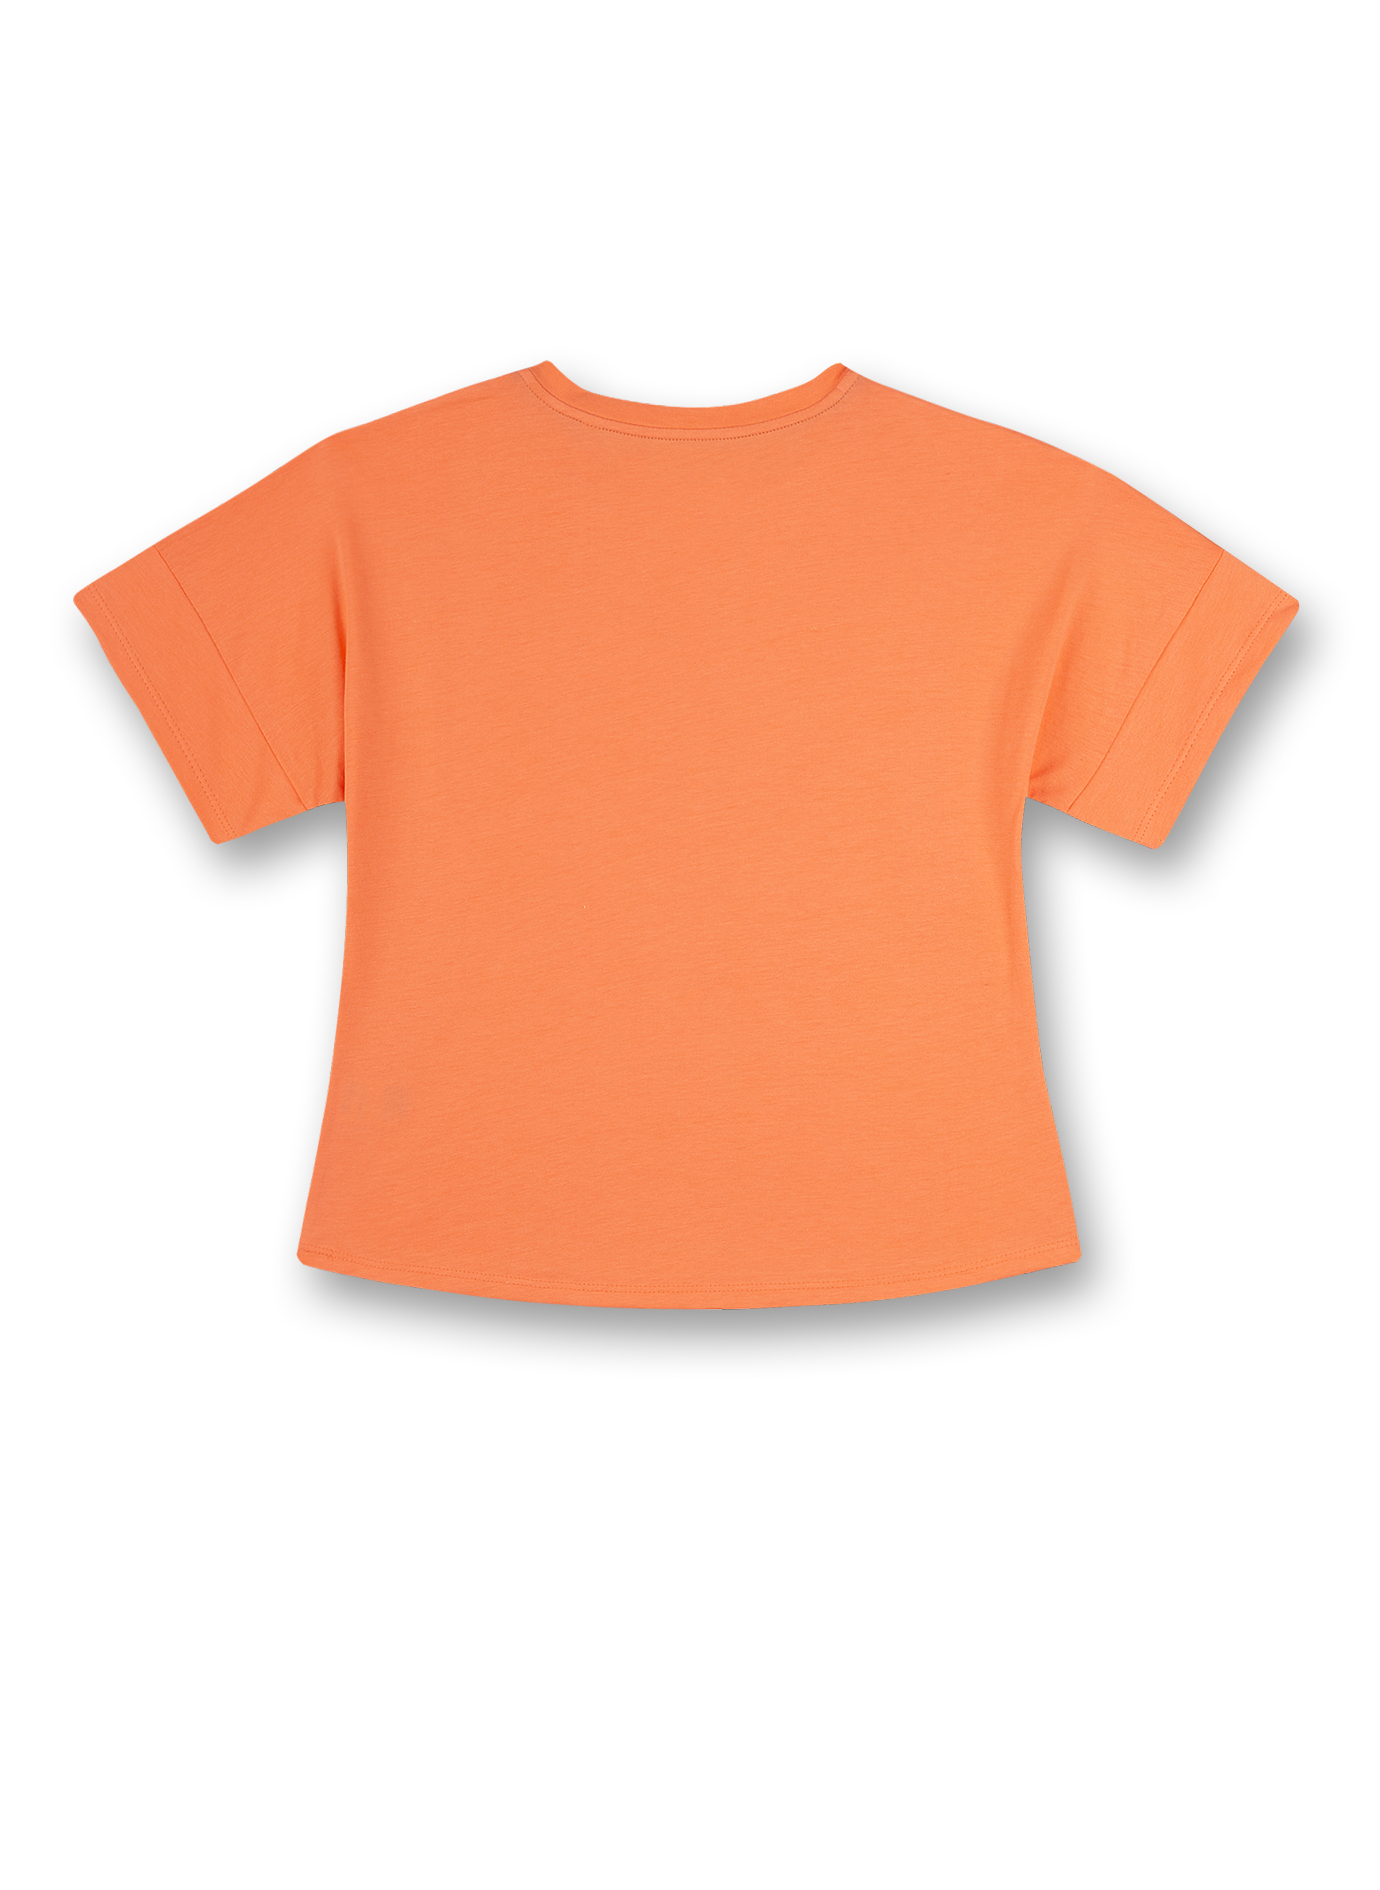 Mädchen T-Shirt Orange Athleisure